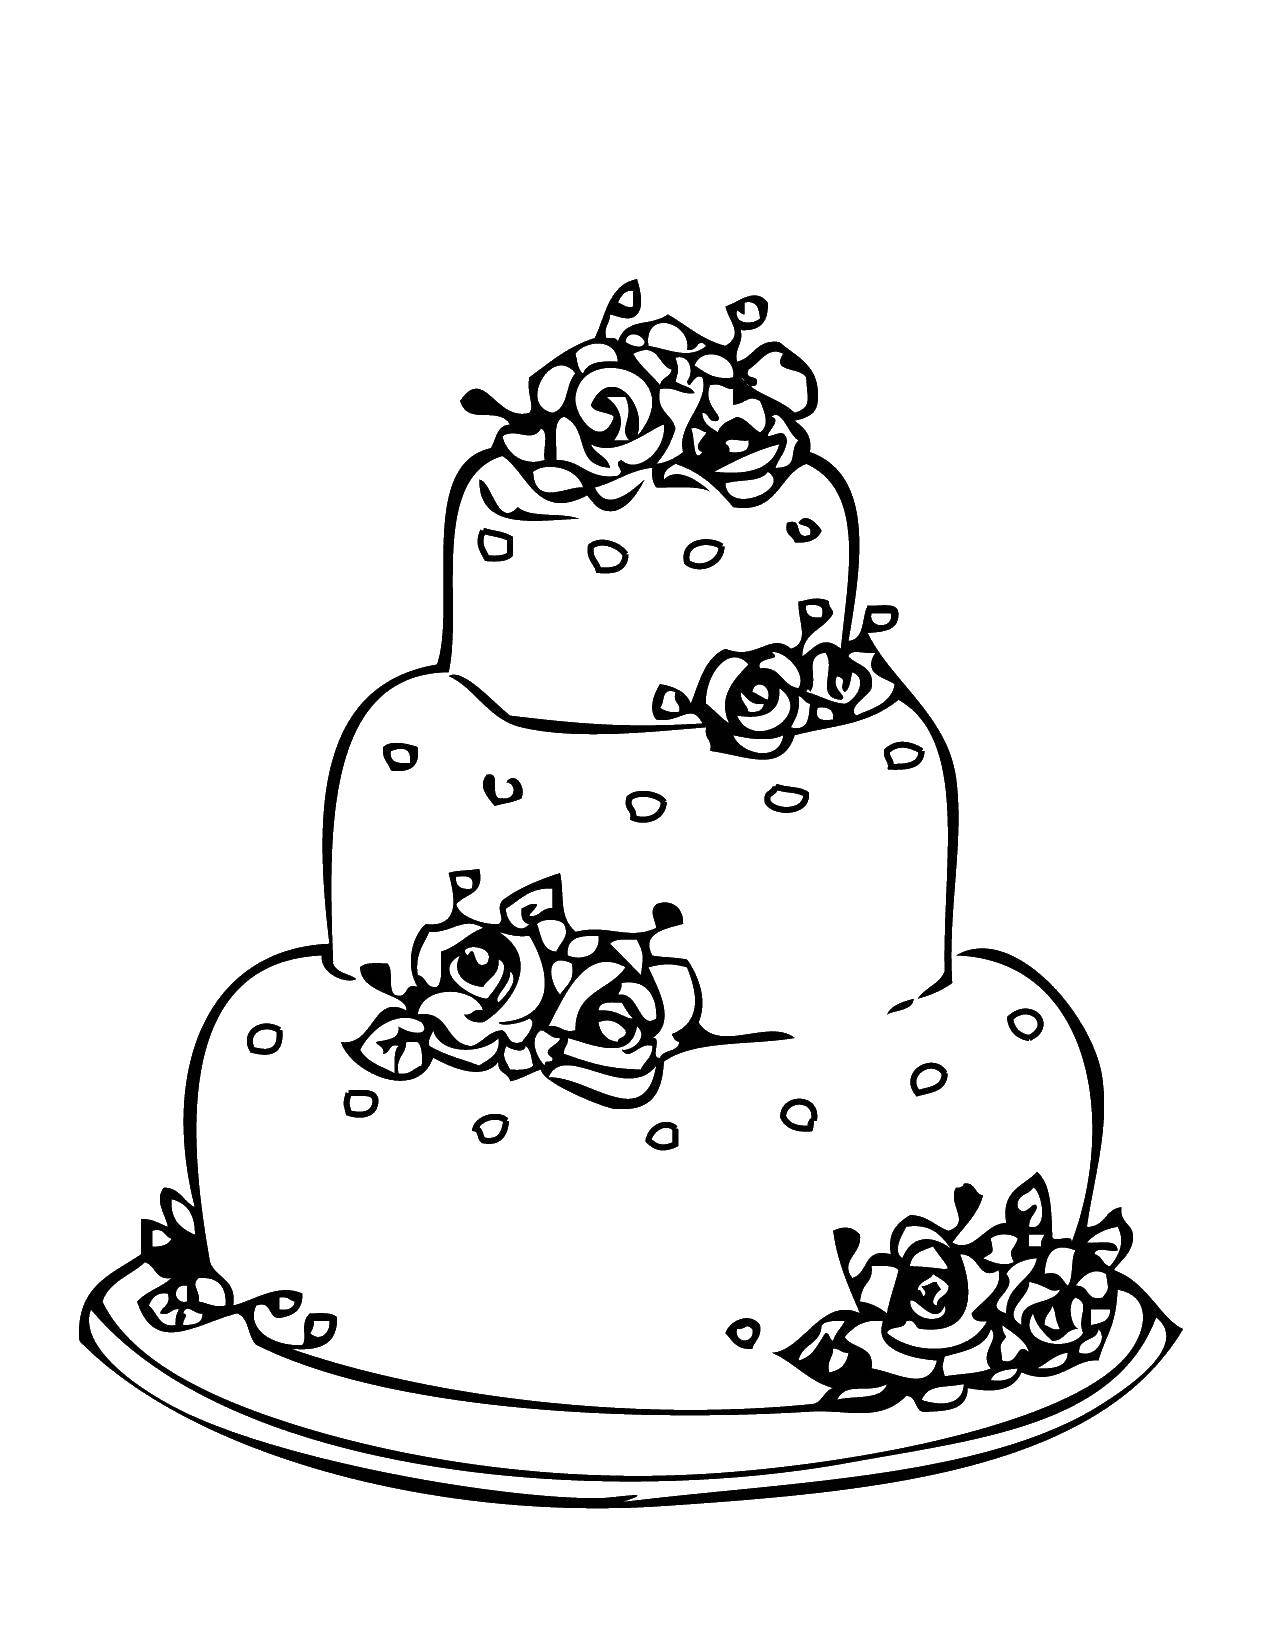 Название: Раскраска Торт. Категория: Свадьба. Теги: свадьба, торт, поздравление.